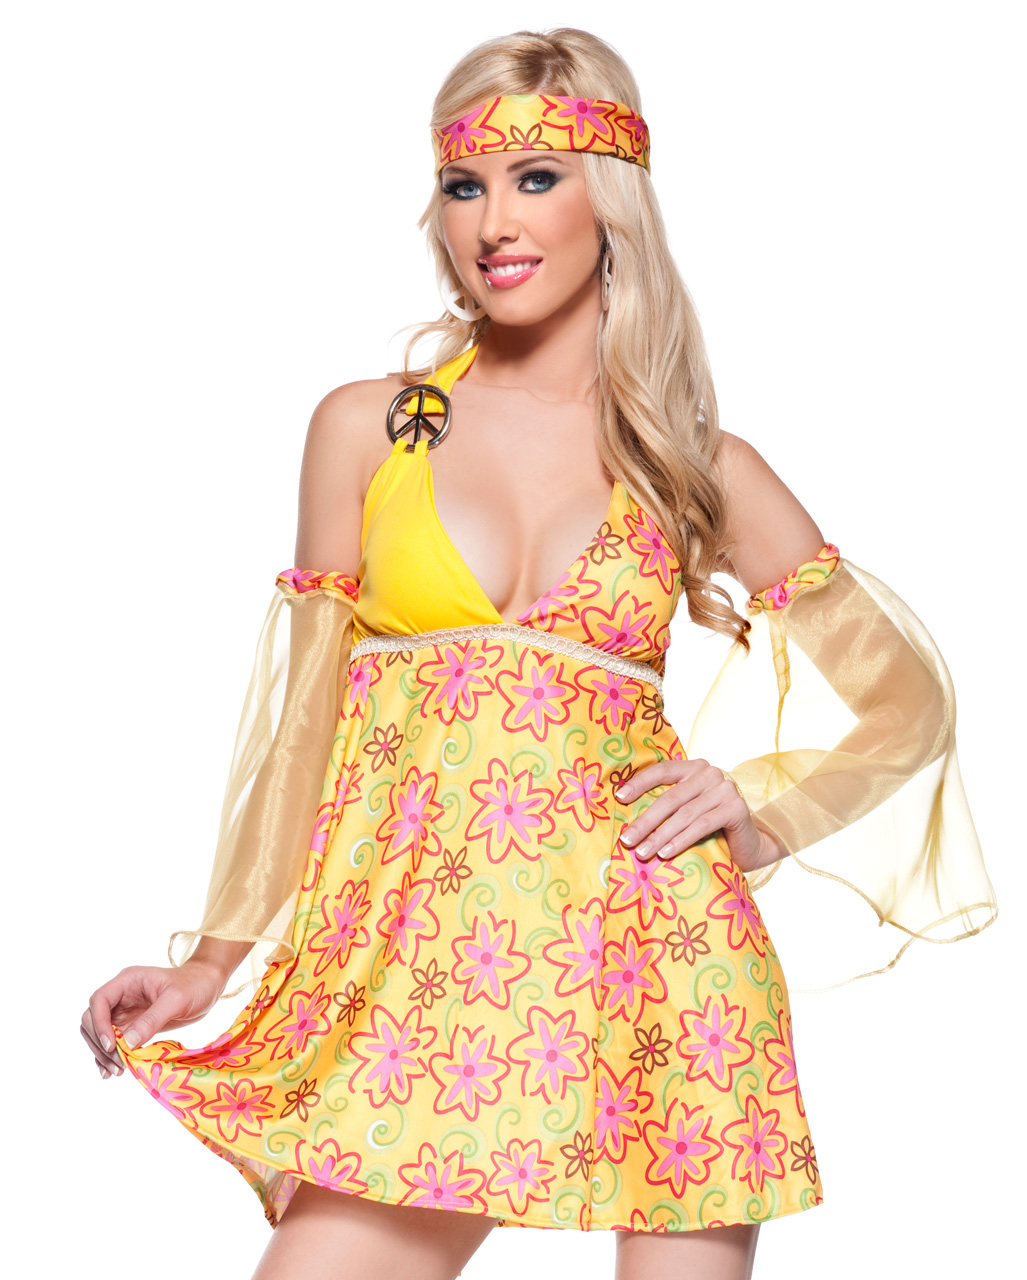 Flower child girls hippie 60s costume 